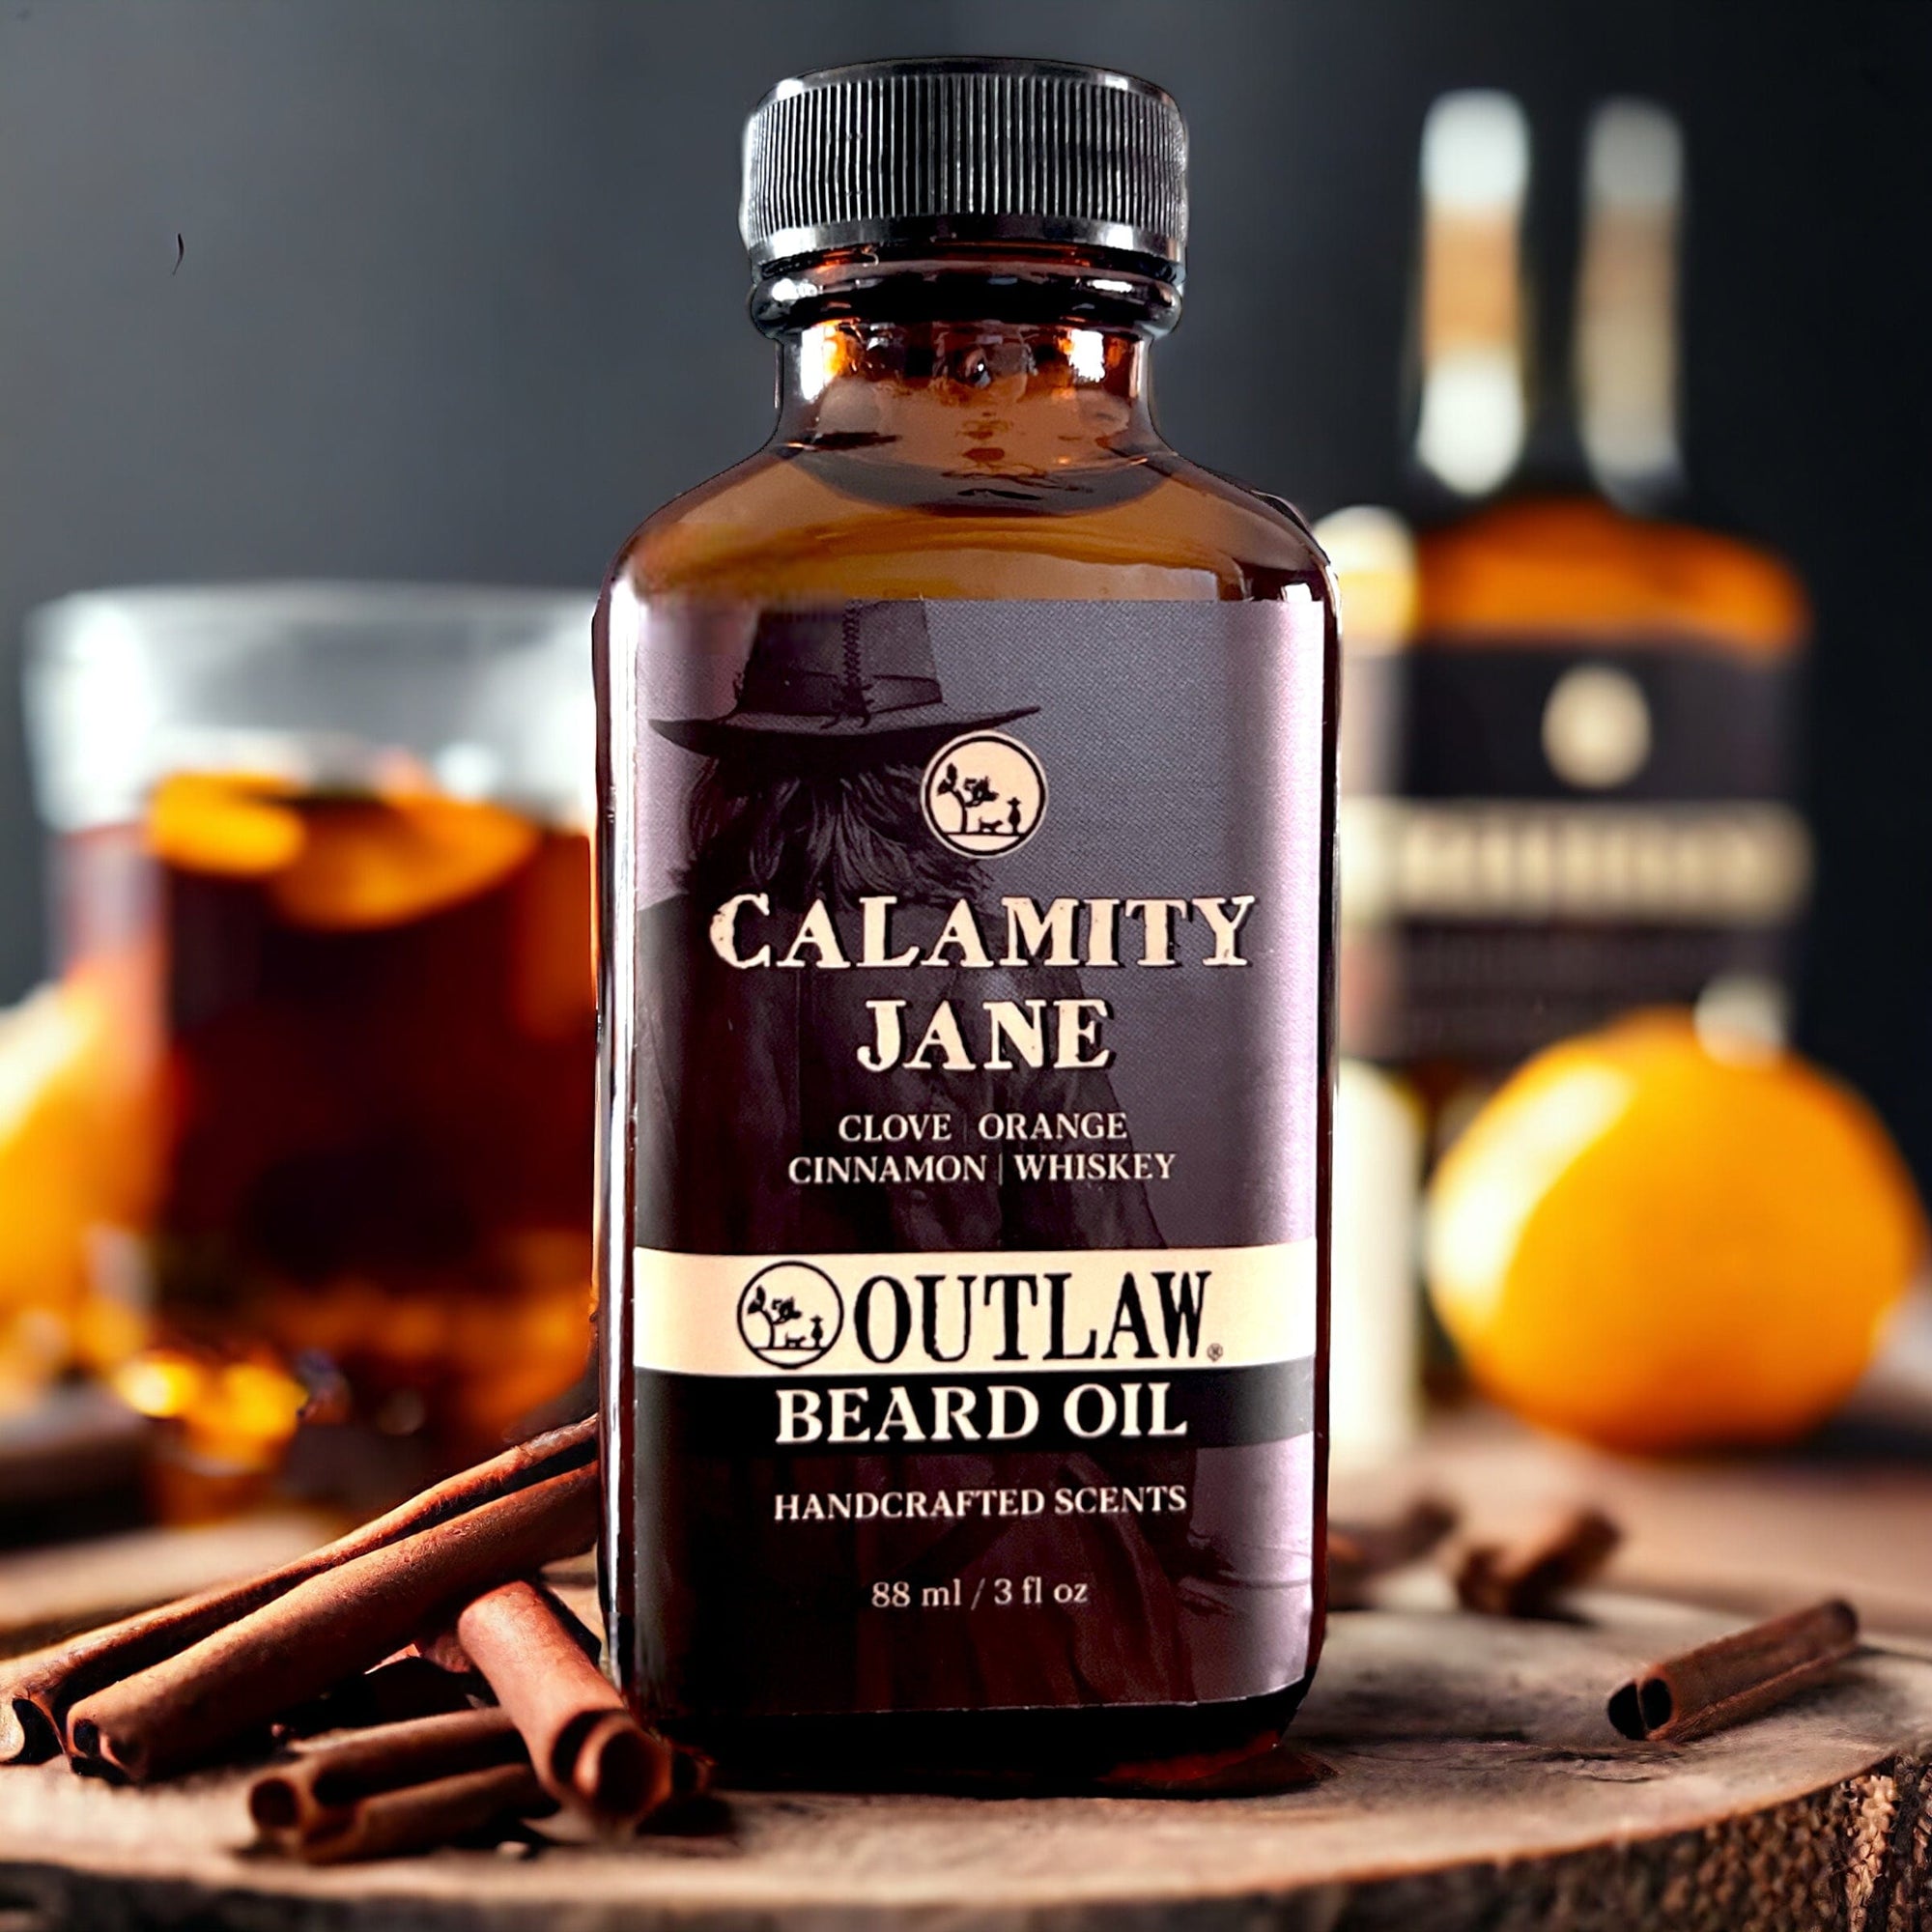 Outlaw Beard and Hair Oil Calamity Jane Magic Beard Oil & Hair Elixir